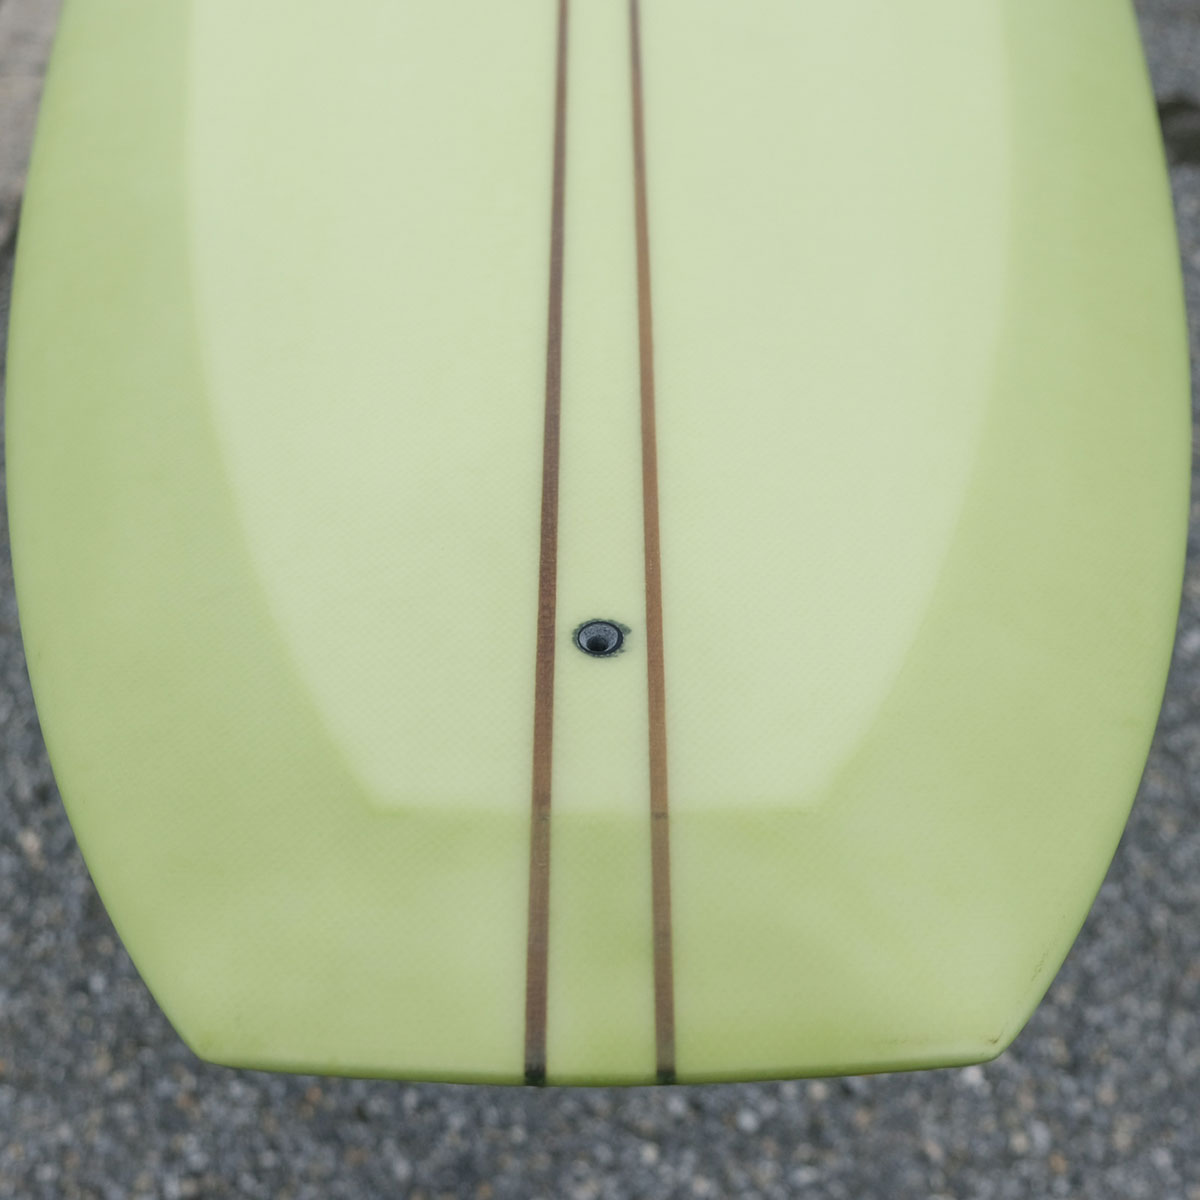 EC SURFBOARDS - Sand Crawler | NAKISURF ナキサーフボード 